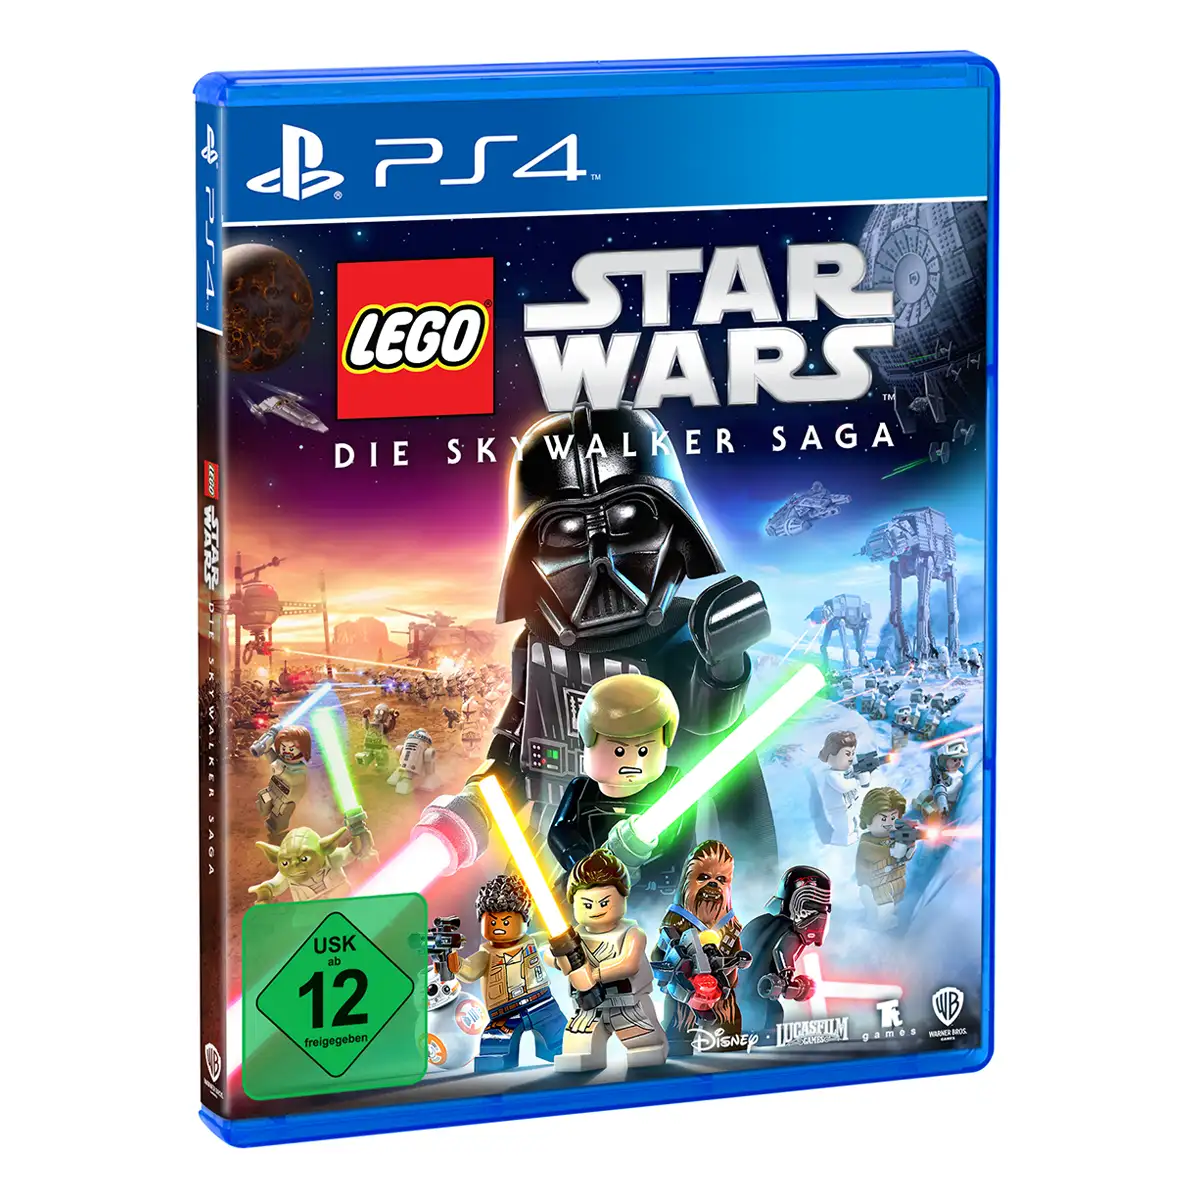 LEGO STAR WARS Die Skywalker Saga (PS4) Image 2